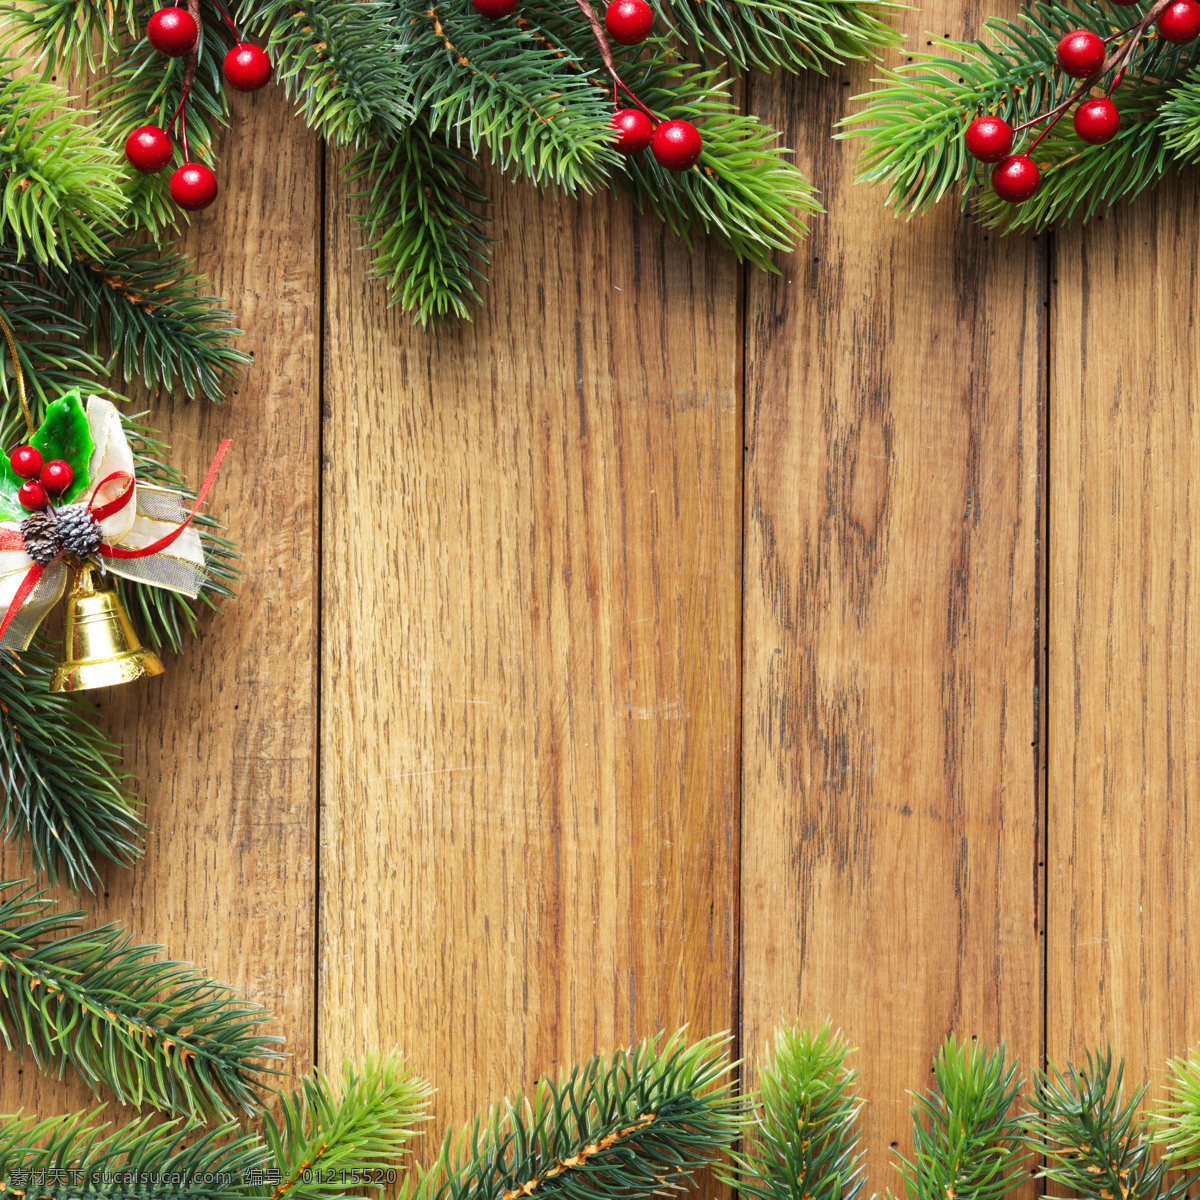 圣诞树 边框 圣诞节 节日 彩球 铃铛 圣诞元素 木板 木纹 节日庆典 生活百科